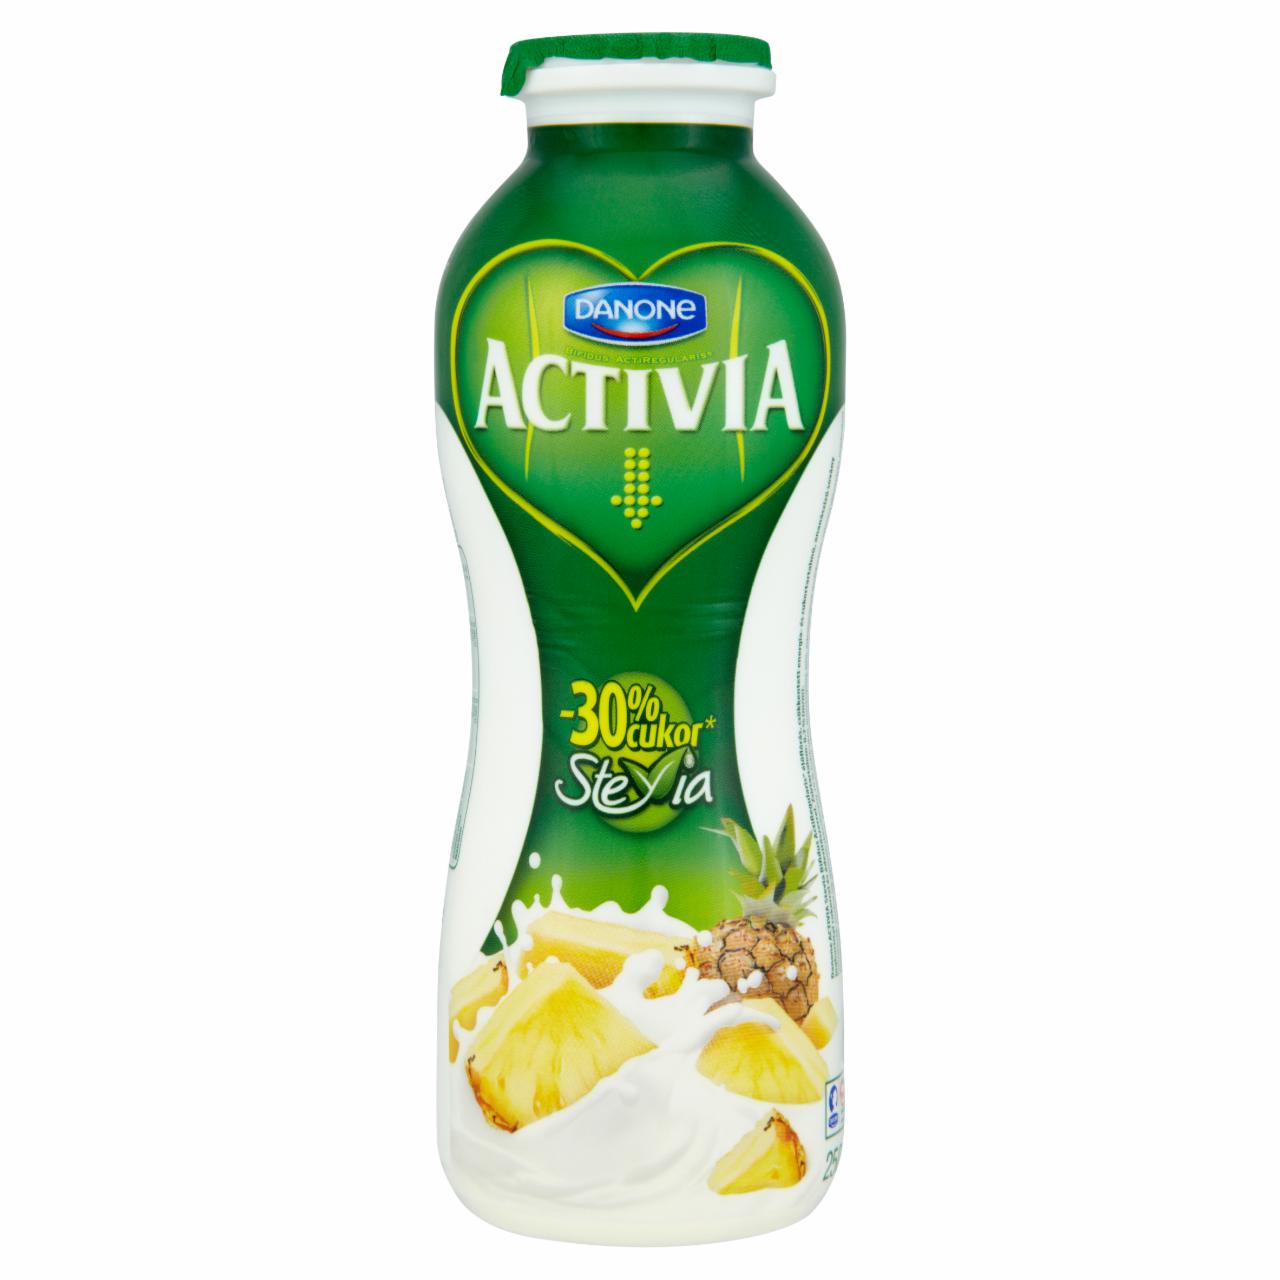 Képek - Danone Activia Stevia ananászízű joghurtital 250 g